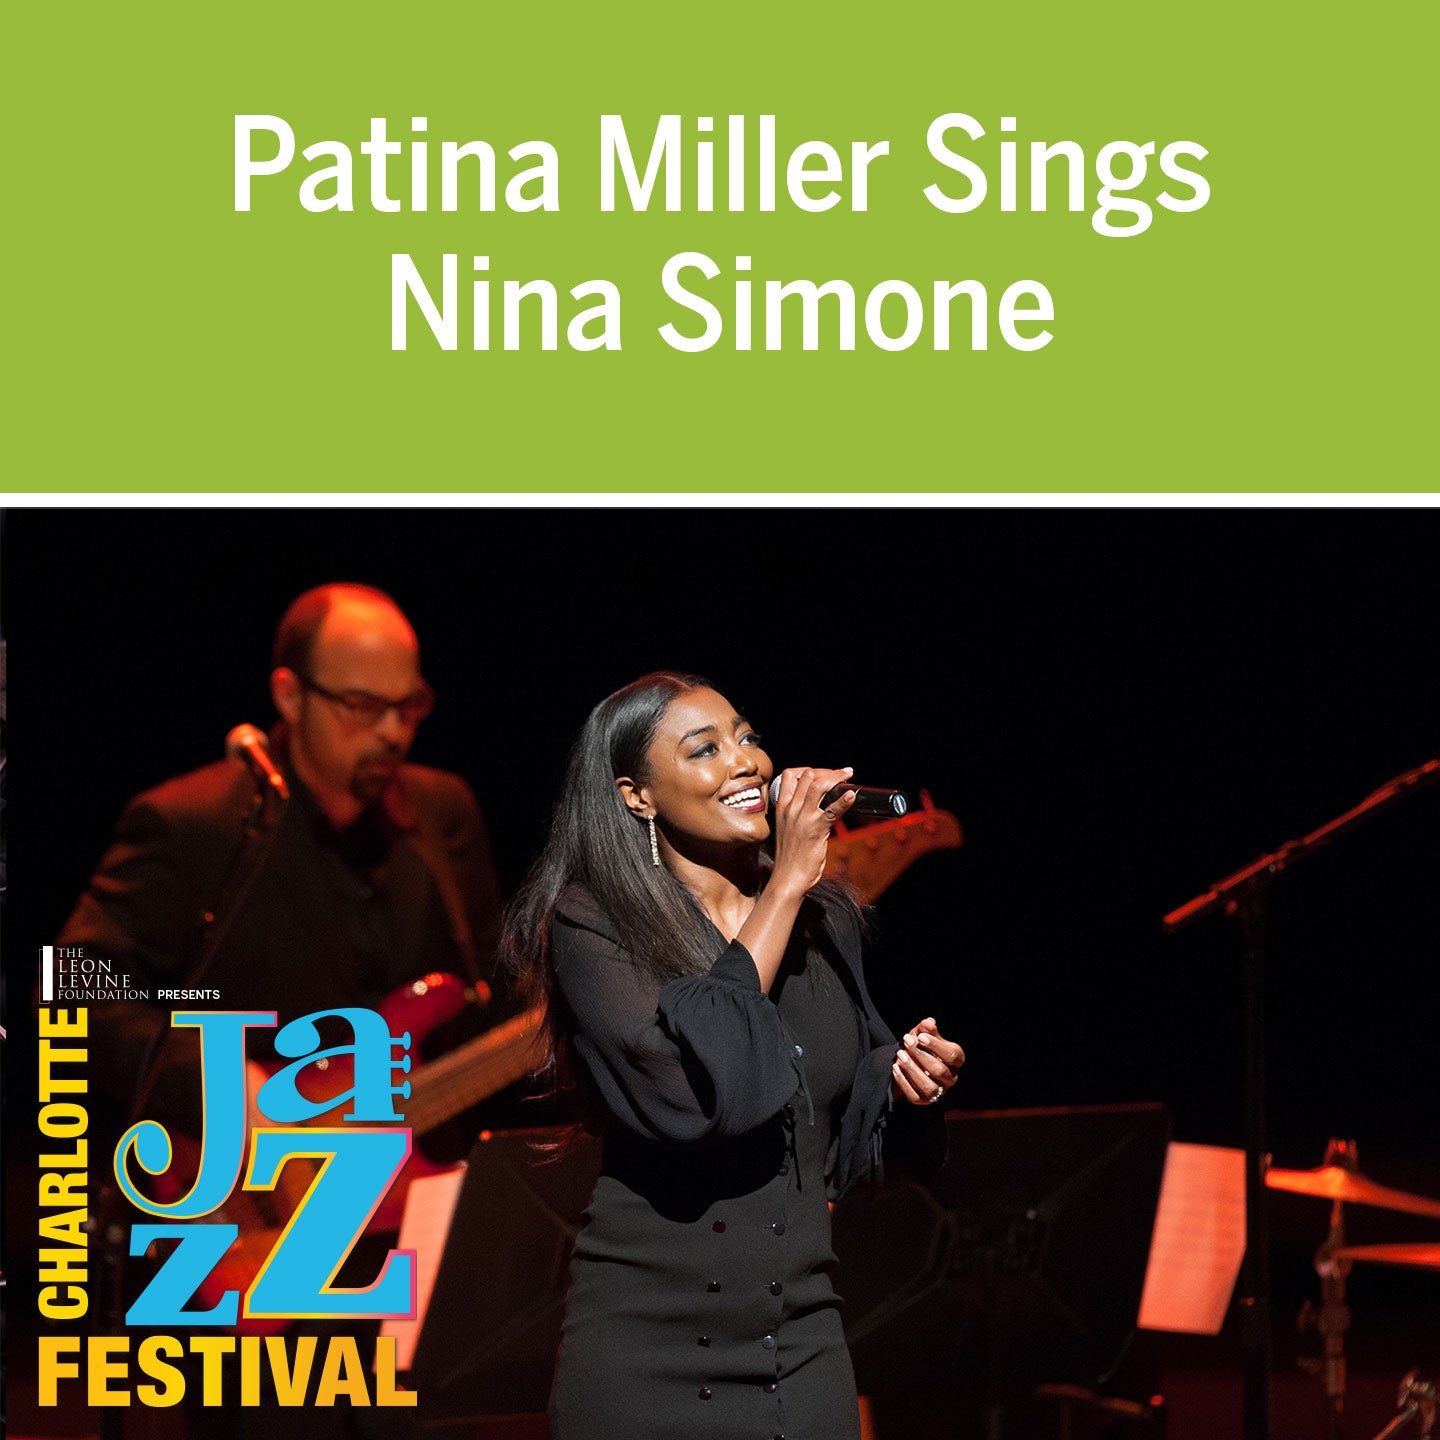 Patina Miller Sings Nina Simone